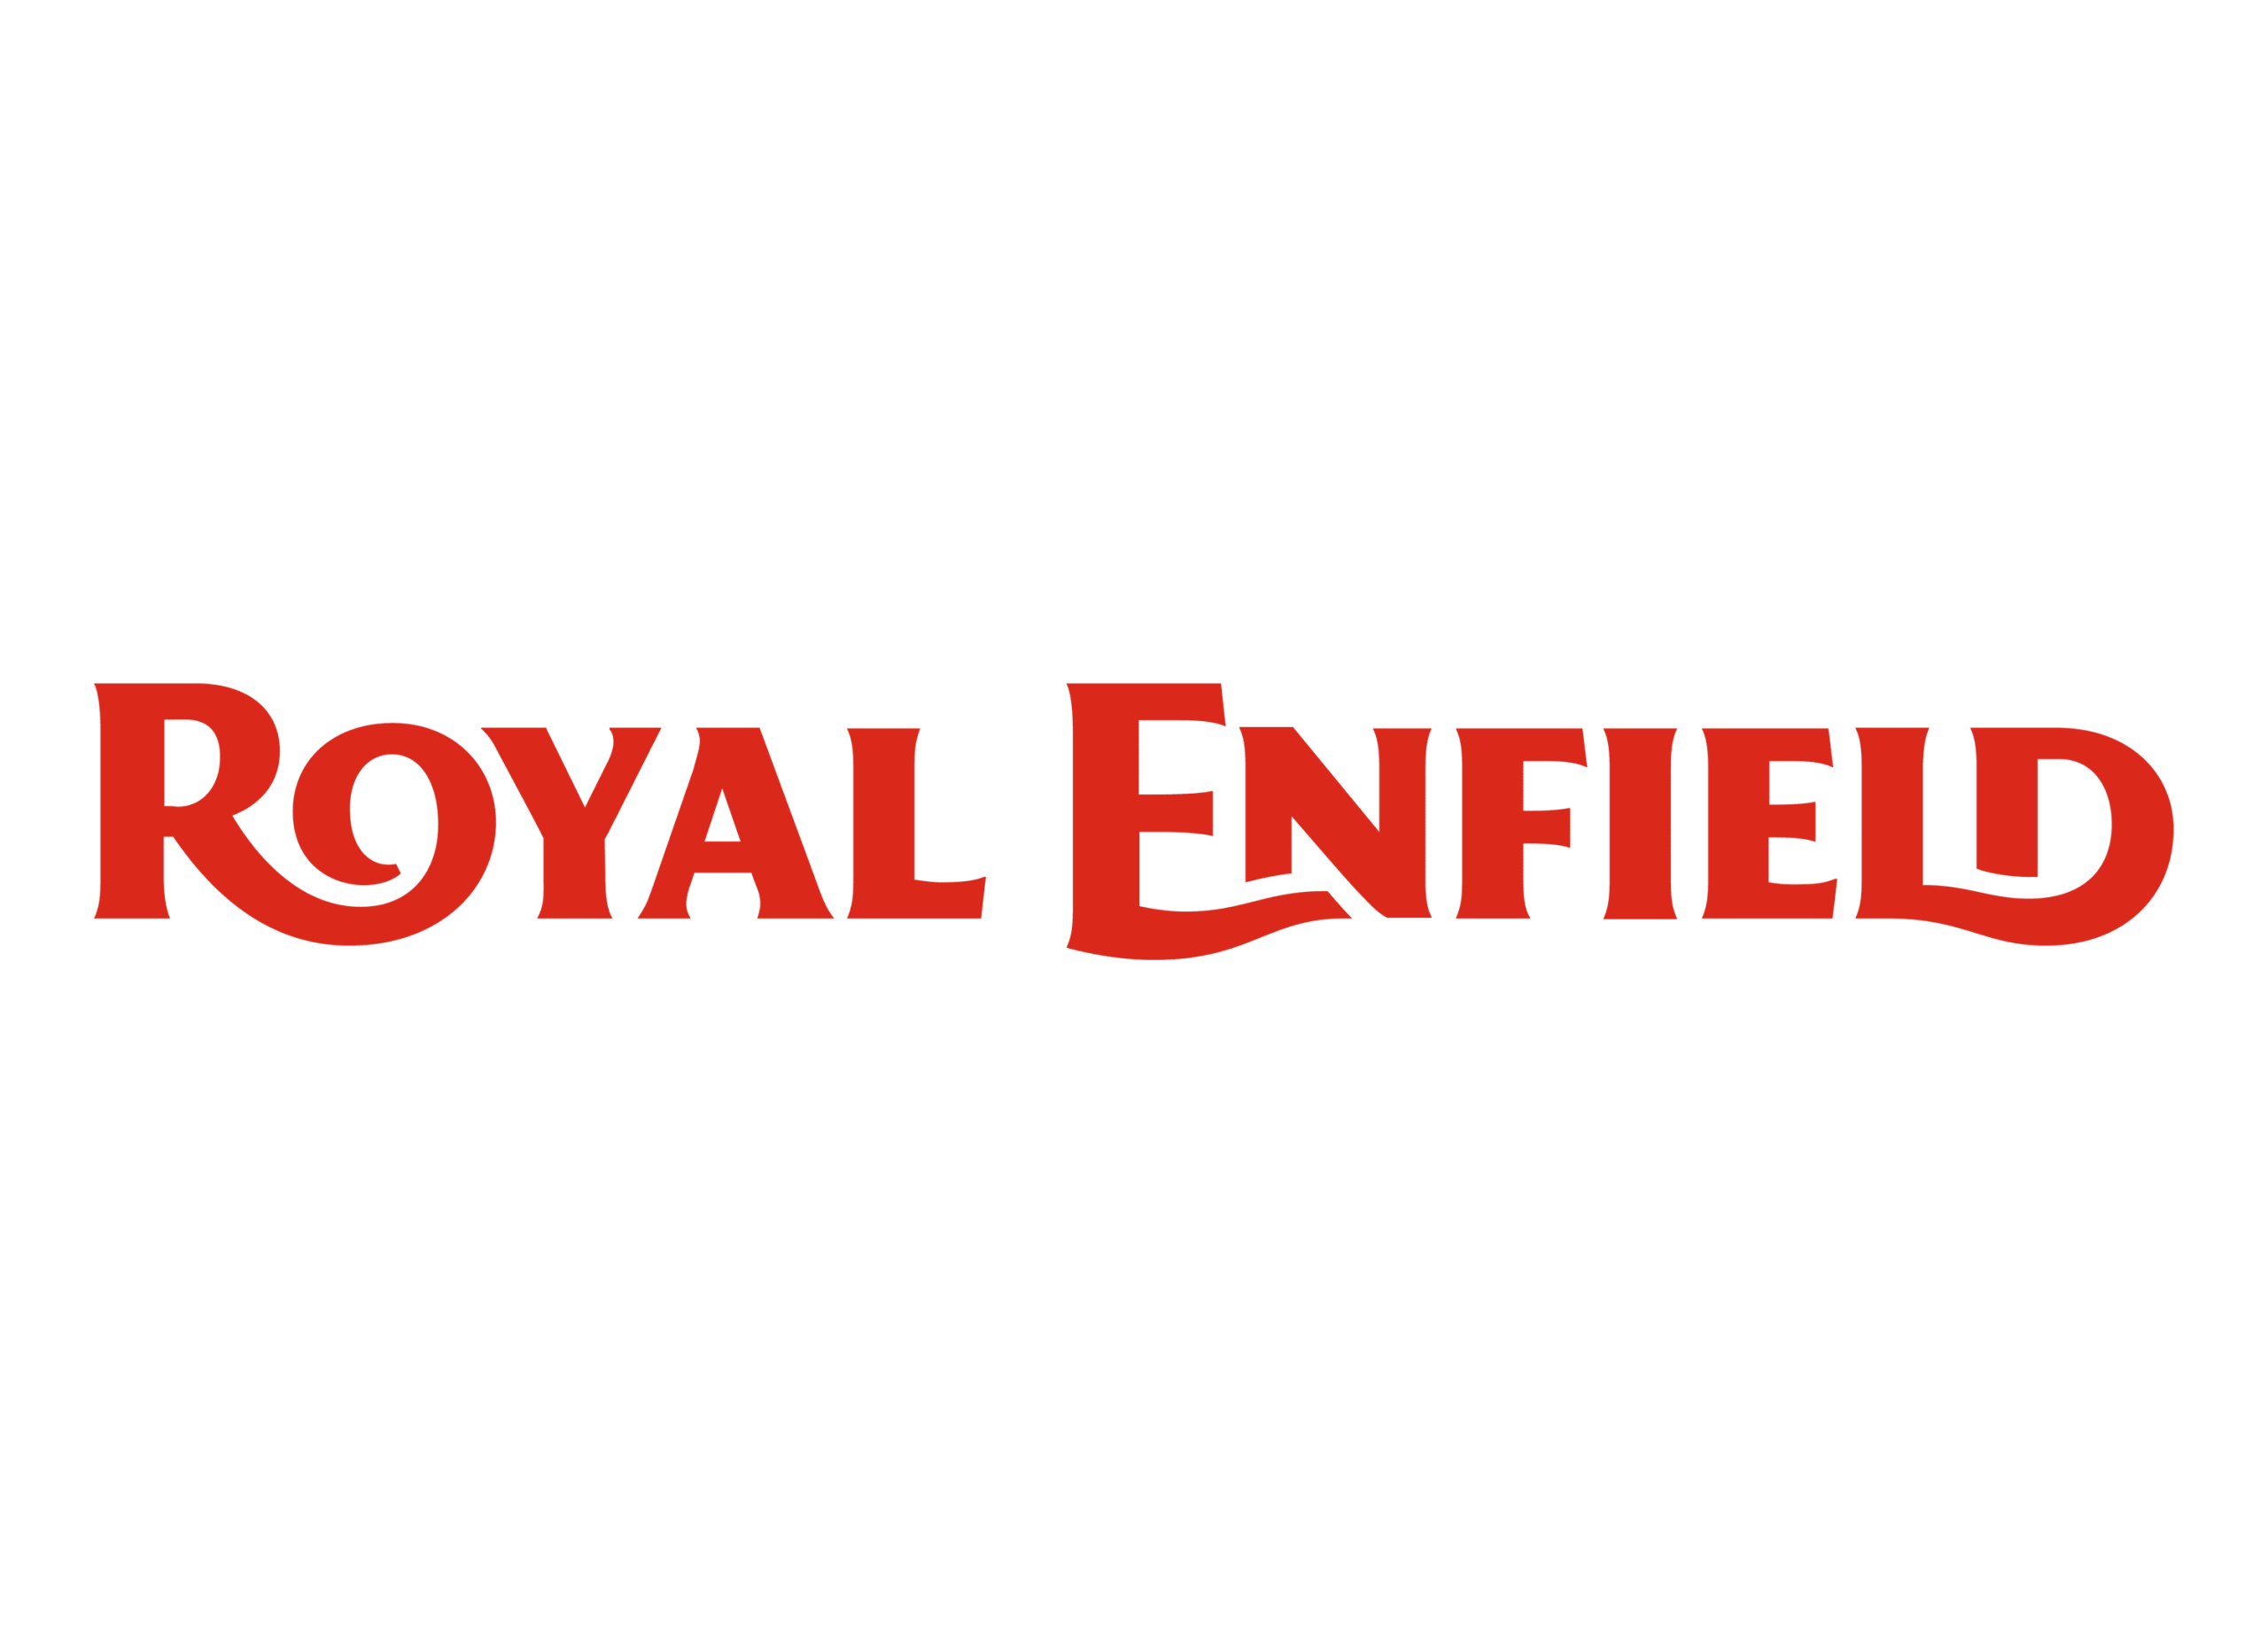 Royal Enfield logo 2014-present